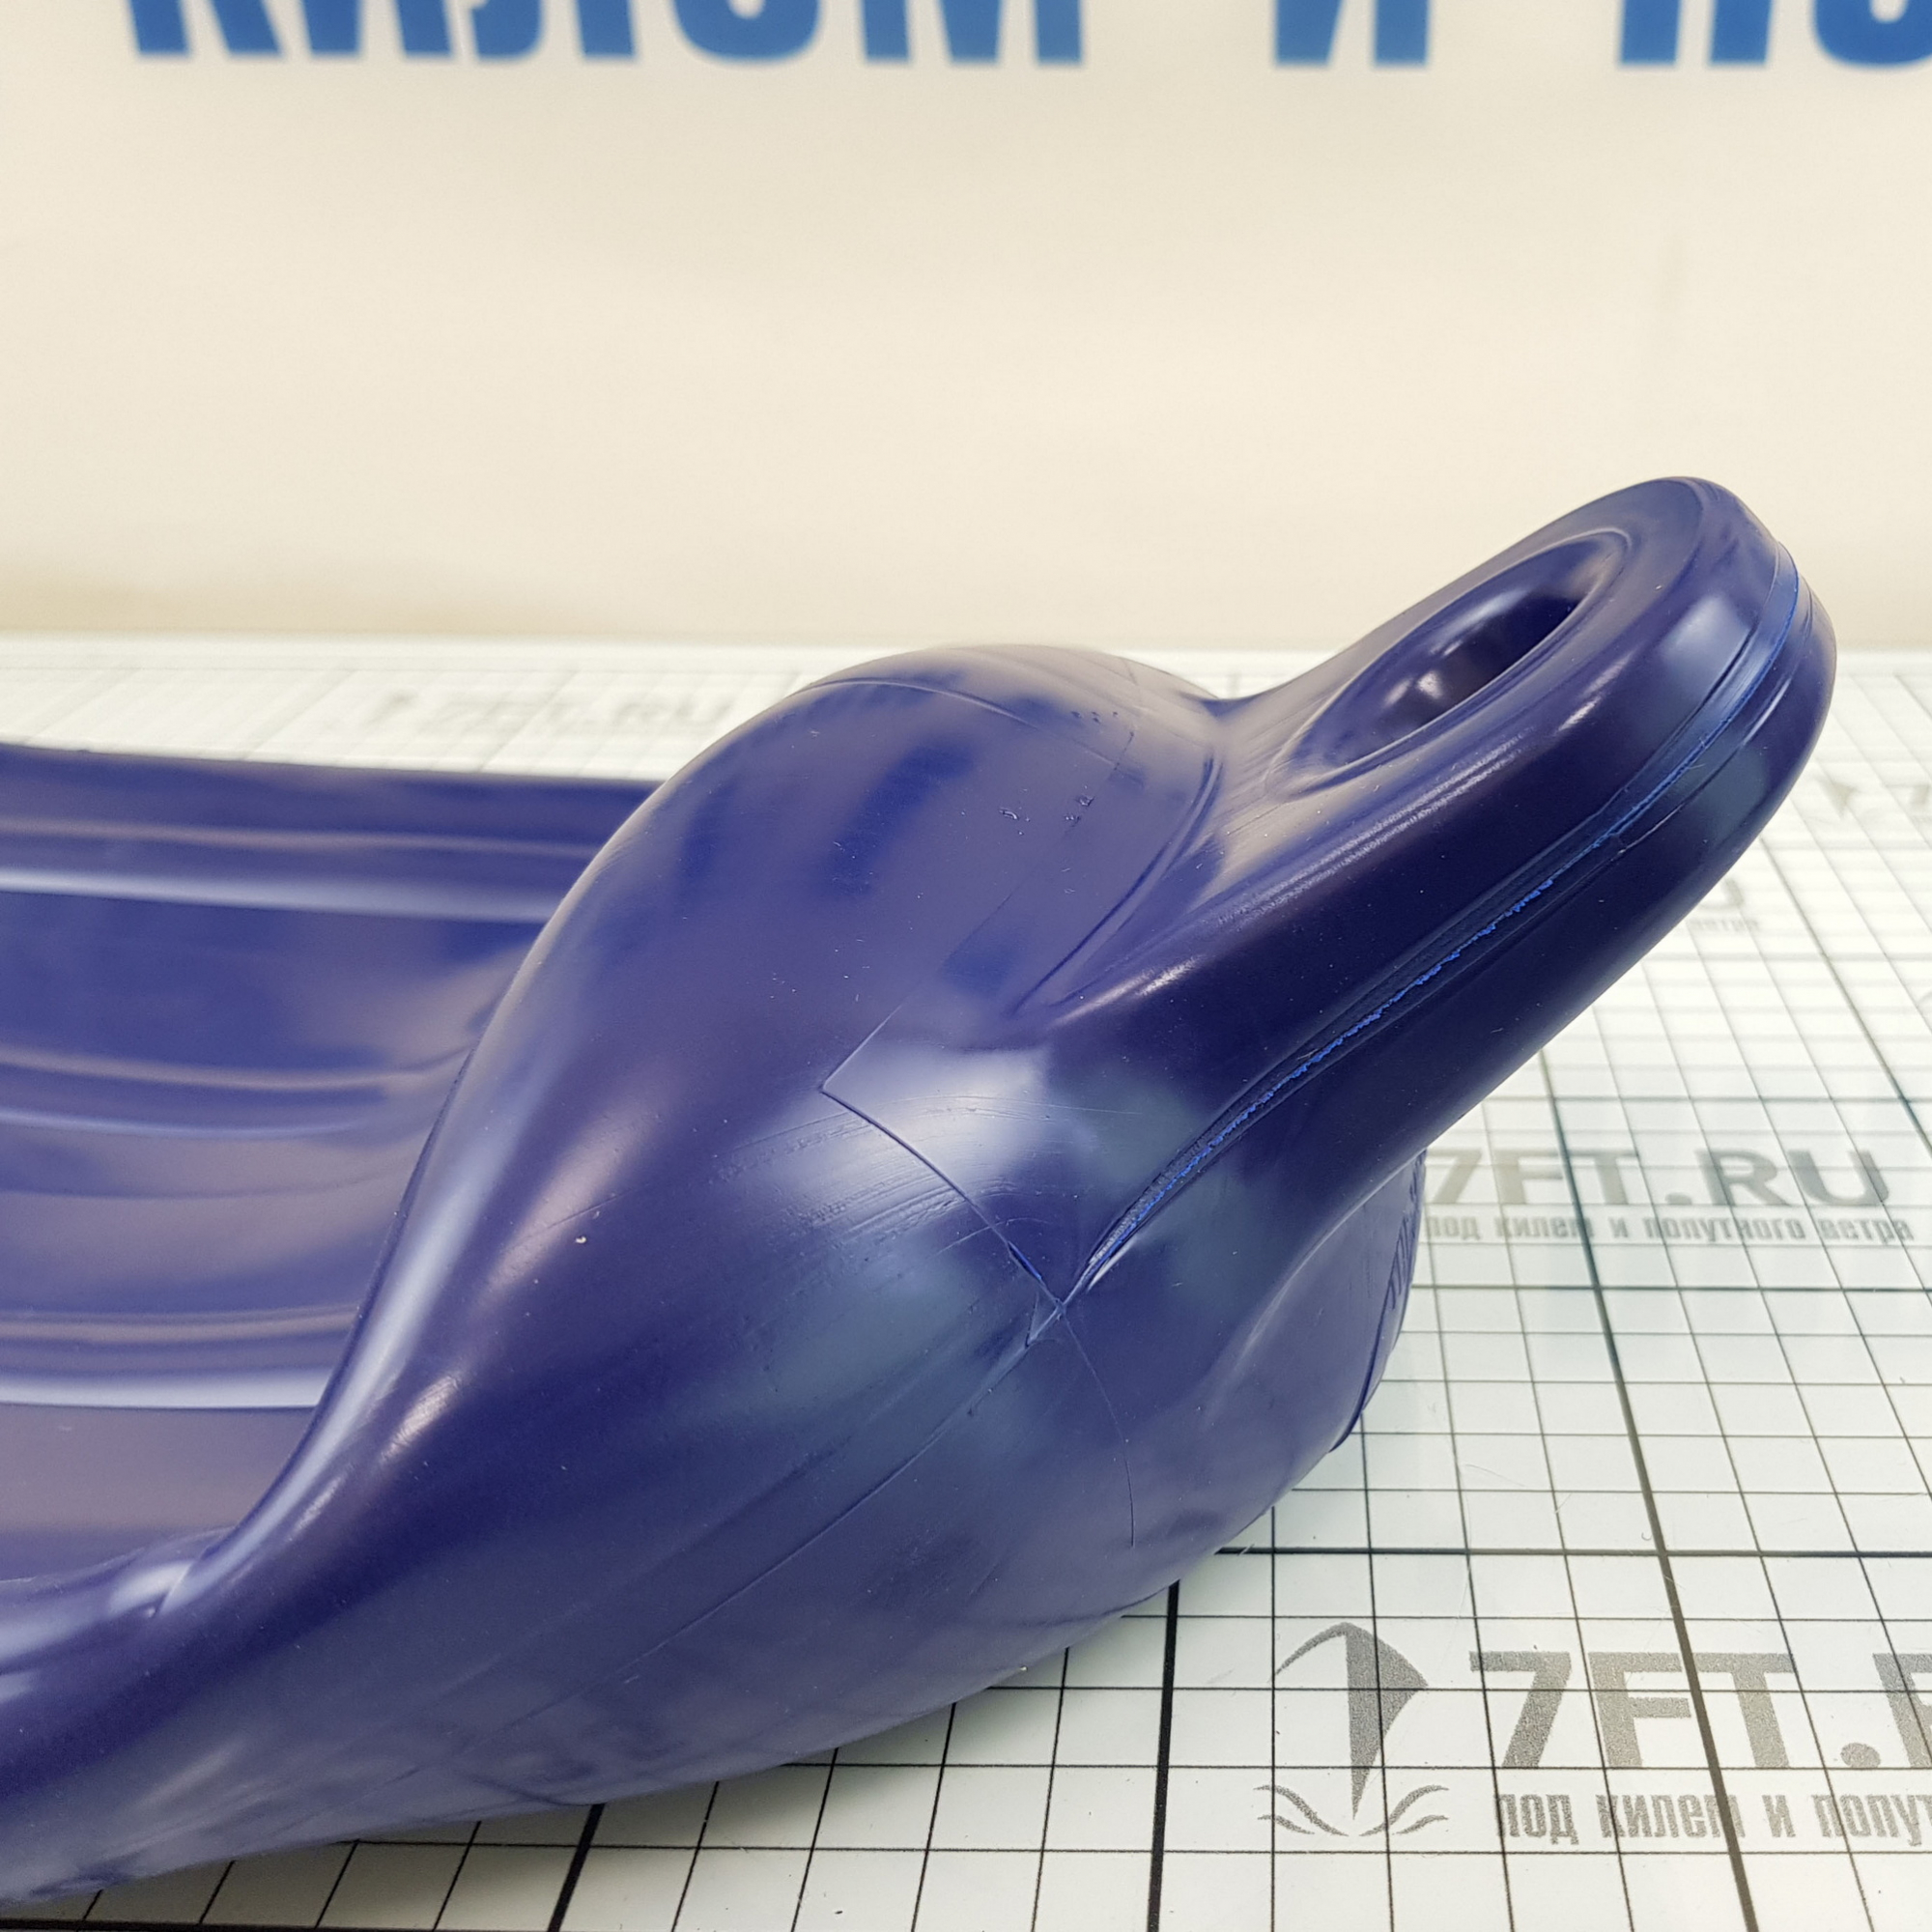 Купить Кранец ребристый из виниловой пластмассы Polyform G4 G-4/12 170 x 585 мм синий 7ft.ru в интернет магазине Семь Футов